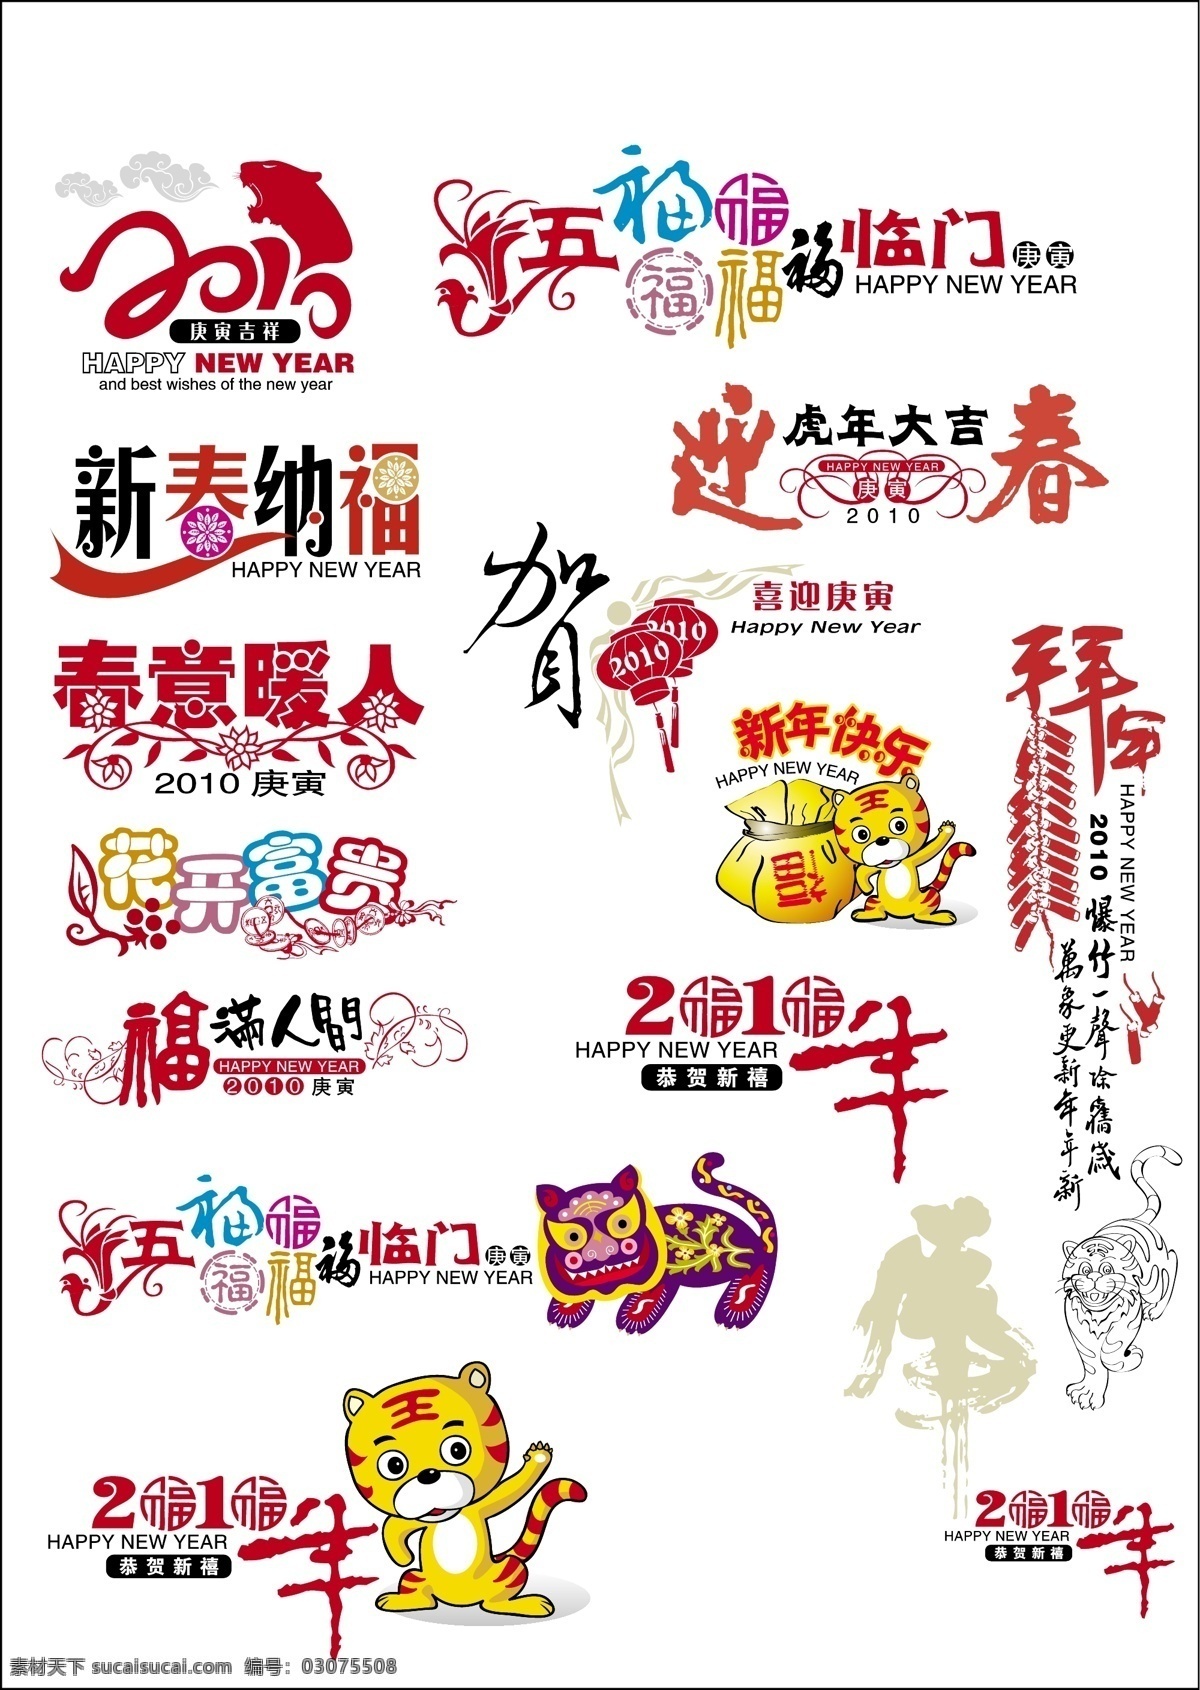 虎年 春节 艺术 字 大 合集 文字设计 字体设计 中国 字体 老虎字体素材 矢量图